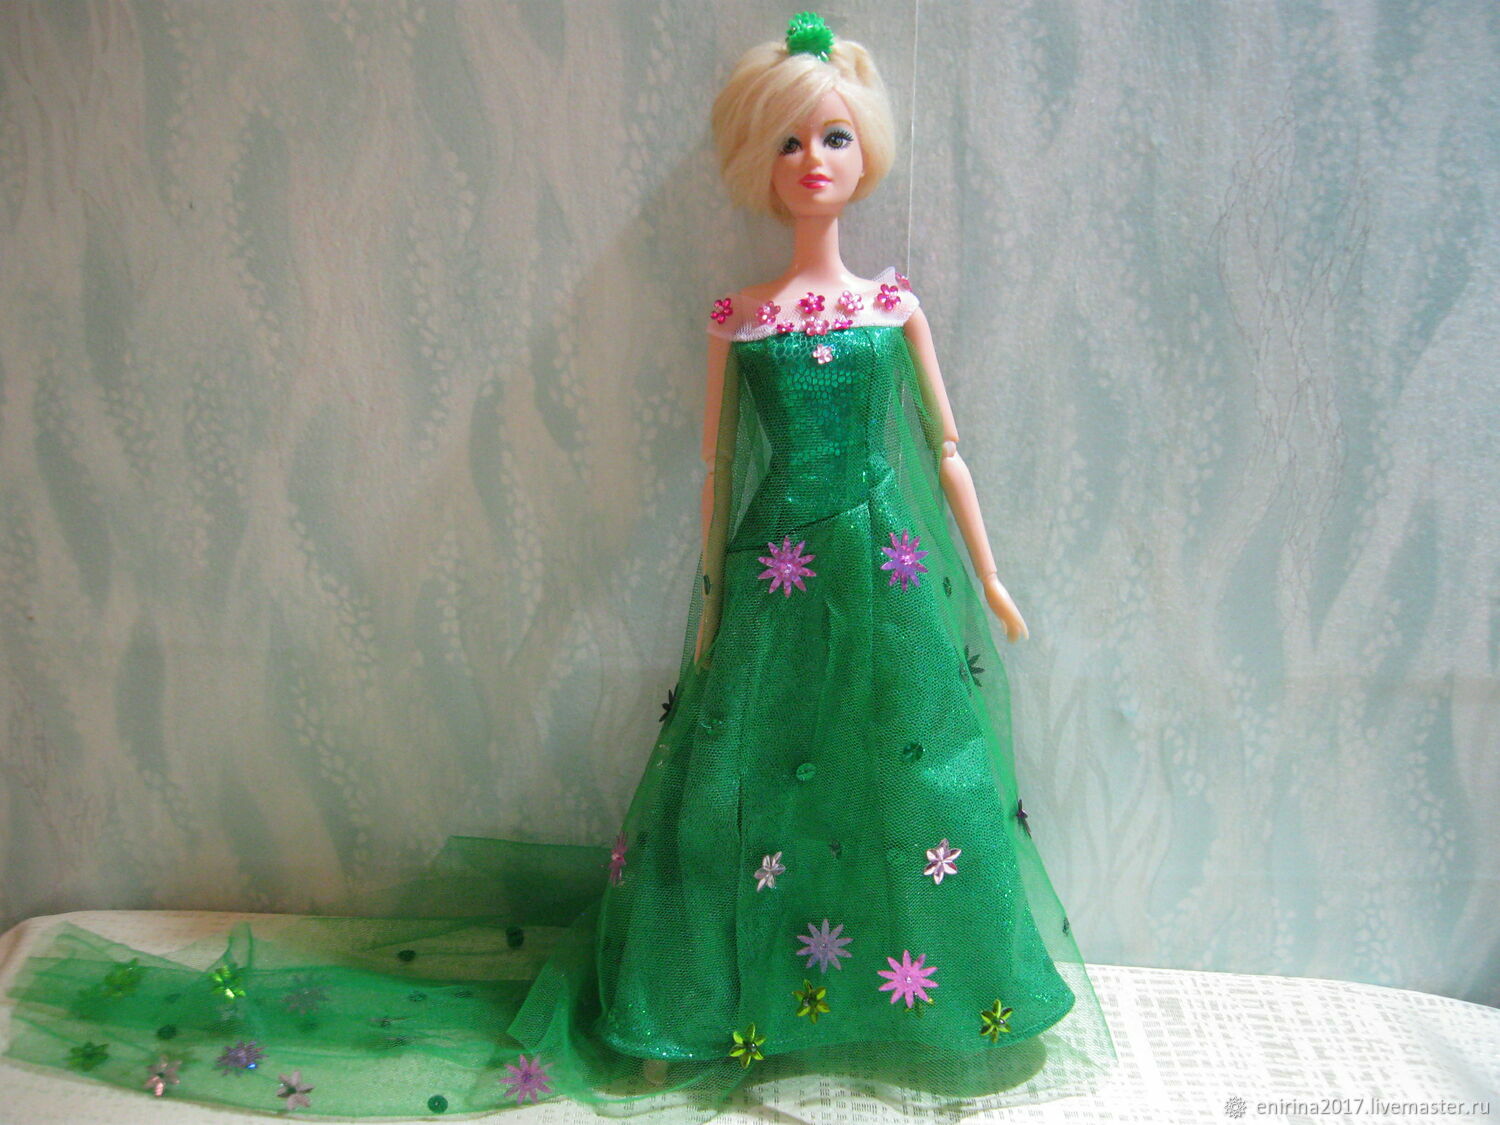  Платье Эльзы из м/ф Холодное сердце, Одежда для кукол, Миасс,  Фото №1